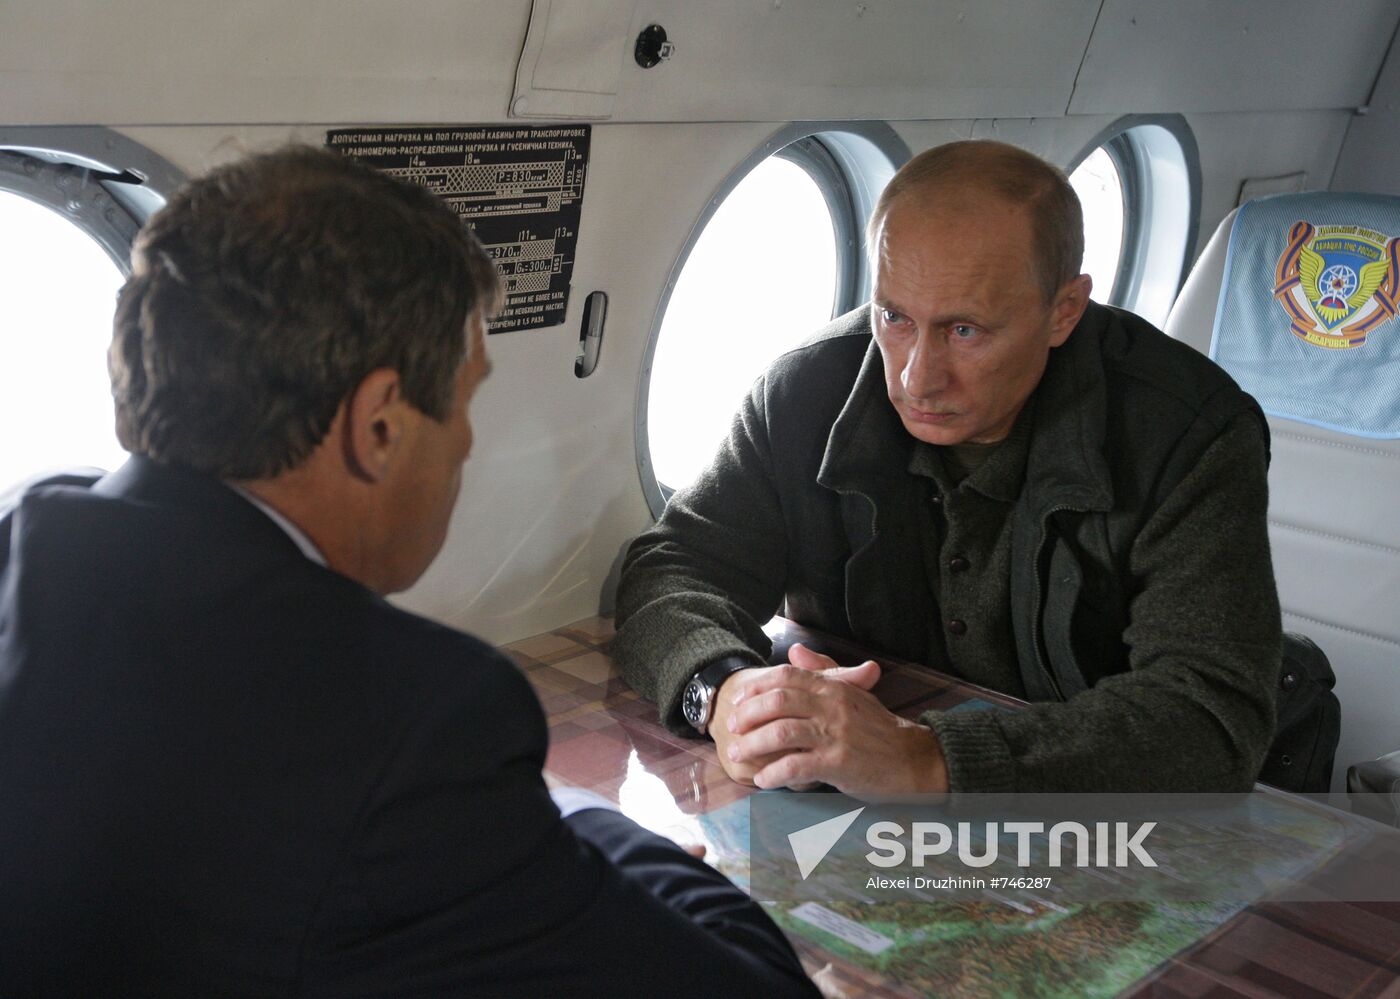 Vladimir Putin meets with Nikolai Dudov